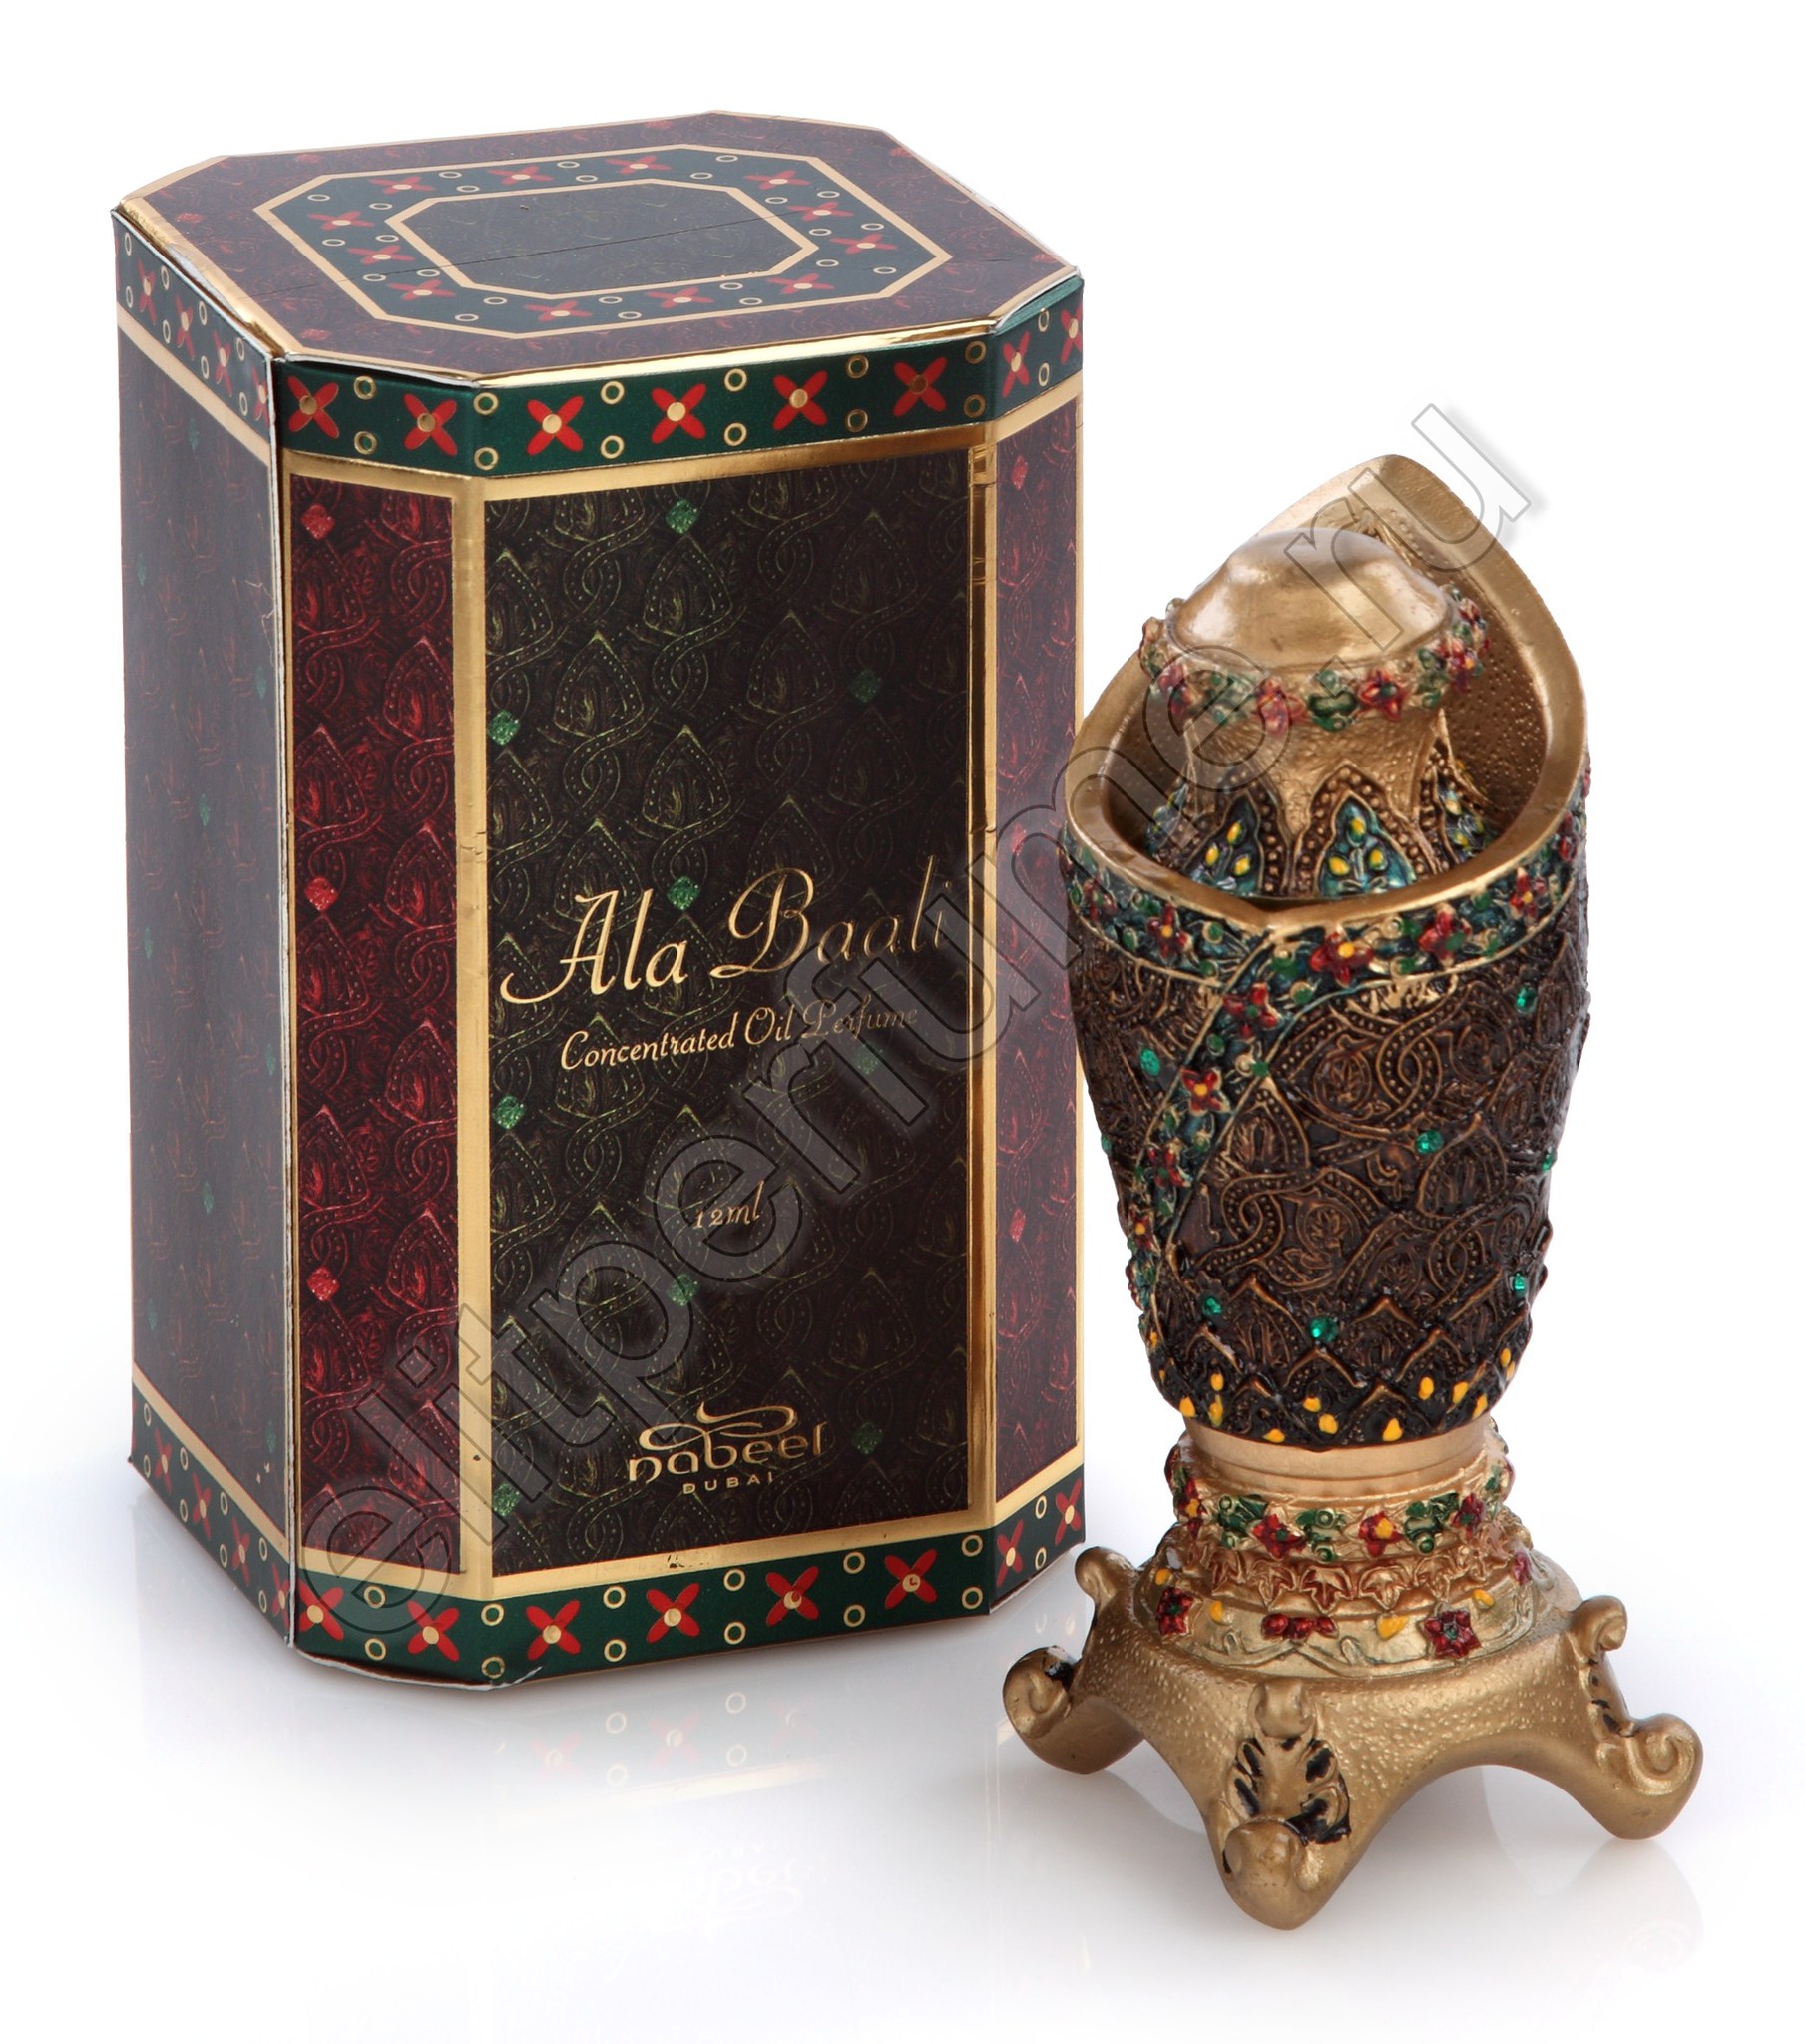 Пробники для духов Ала Баали Ala Baali 1 мл арабские масляные духи от Набиль Nabeel Perfumes